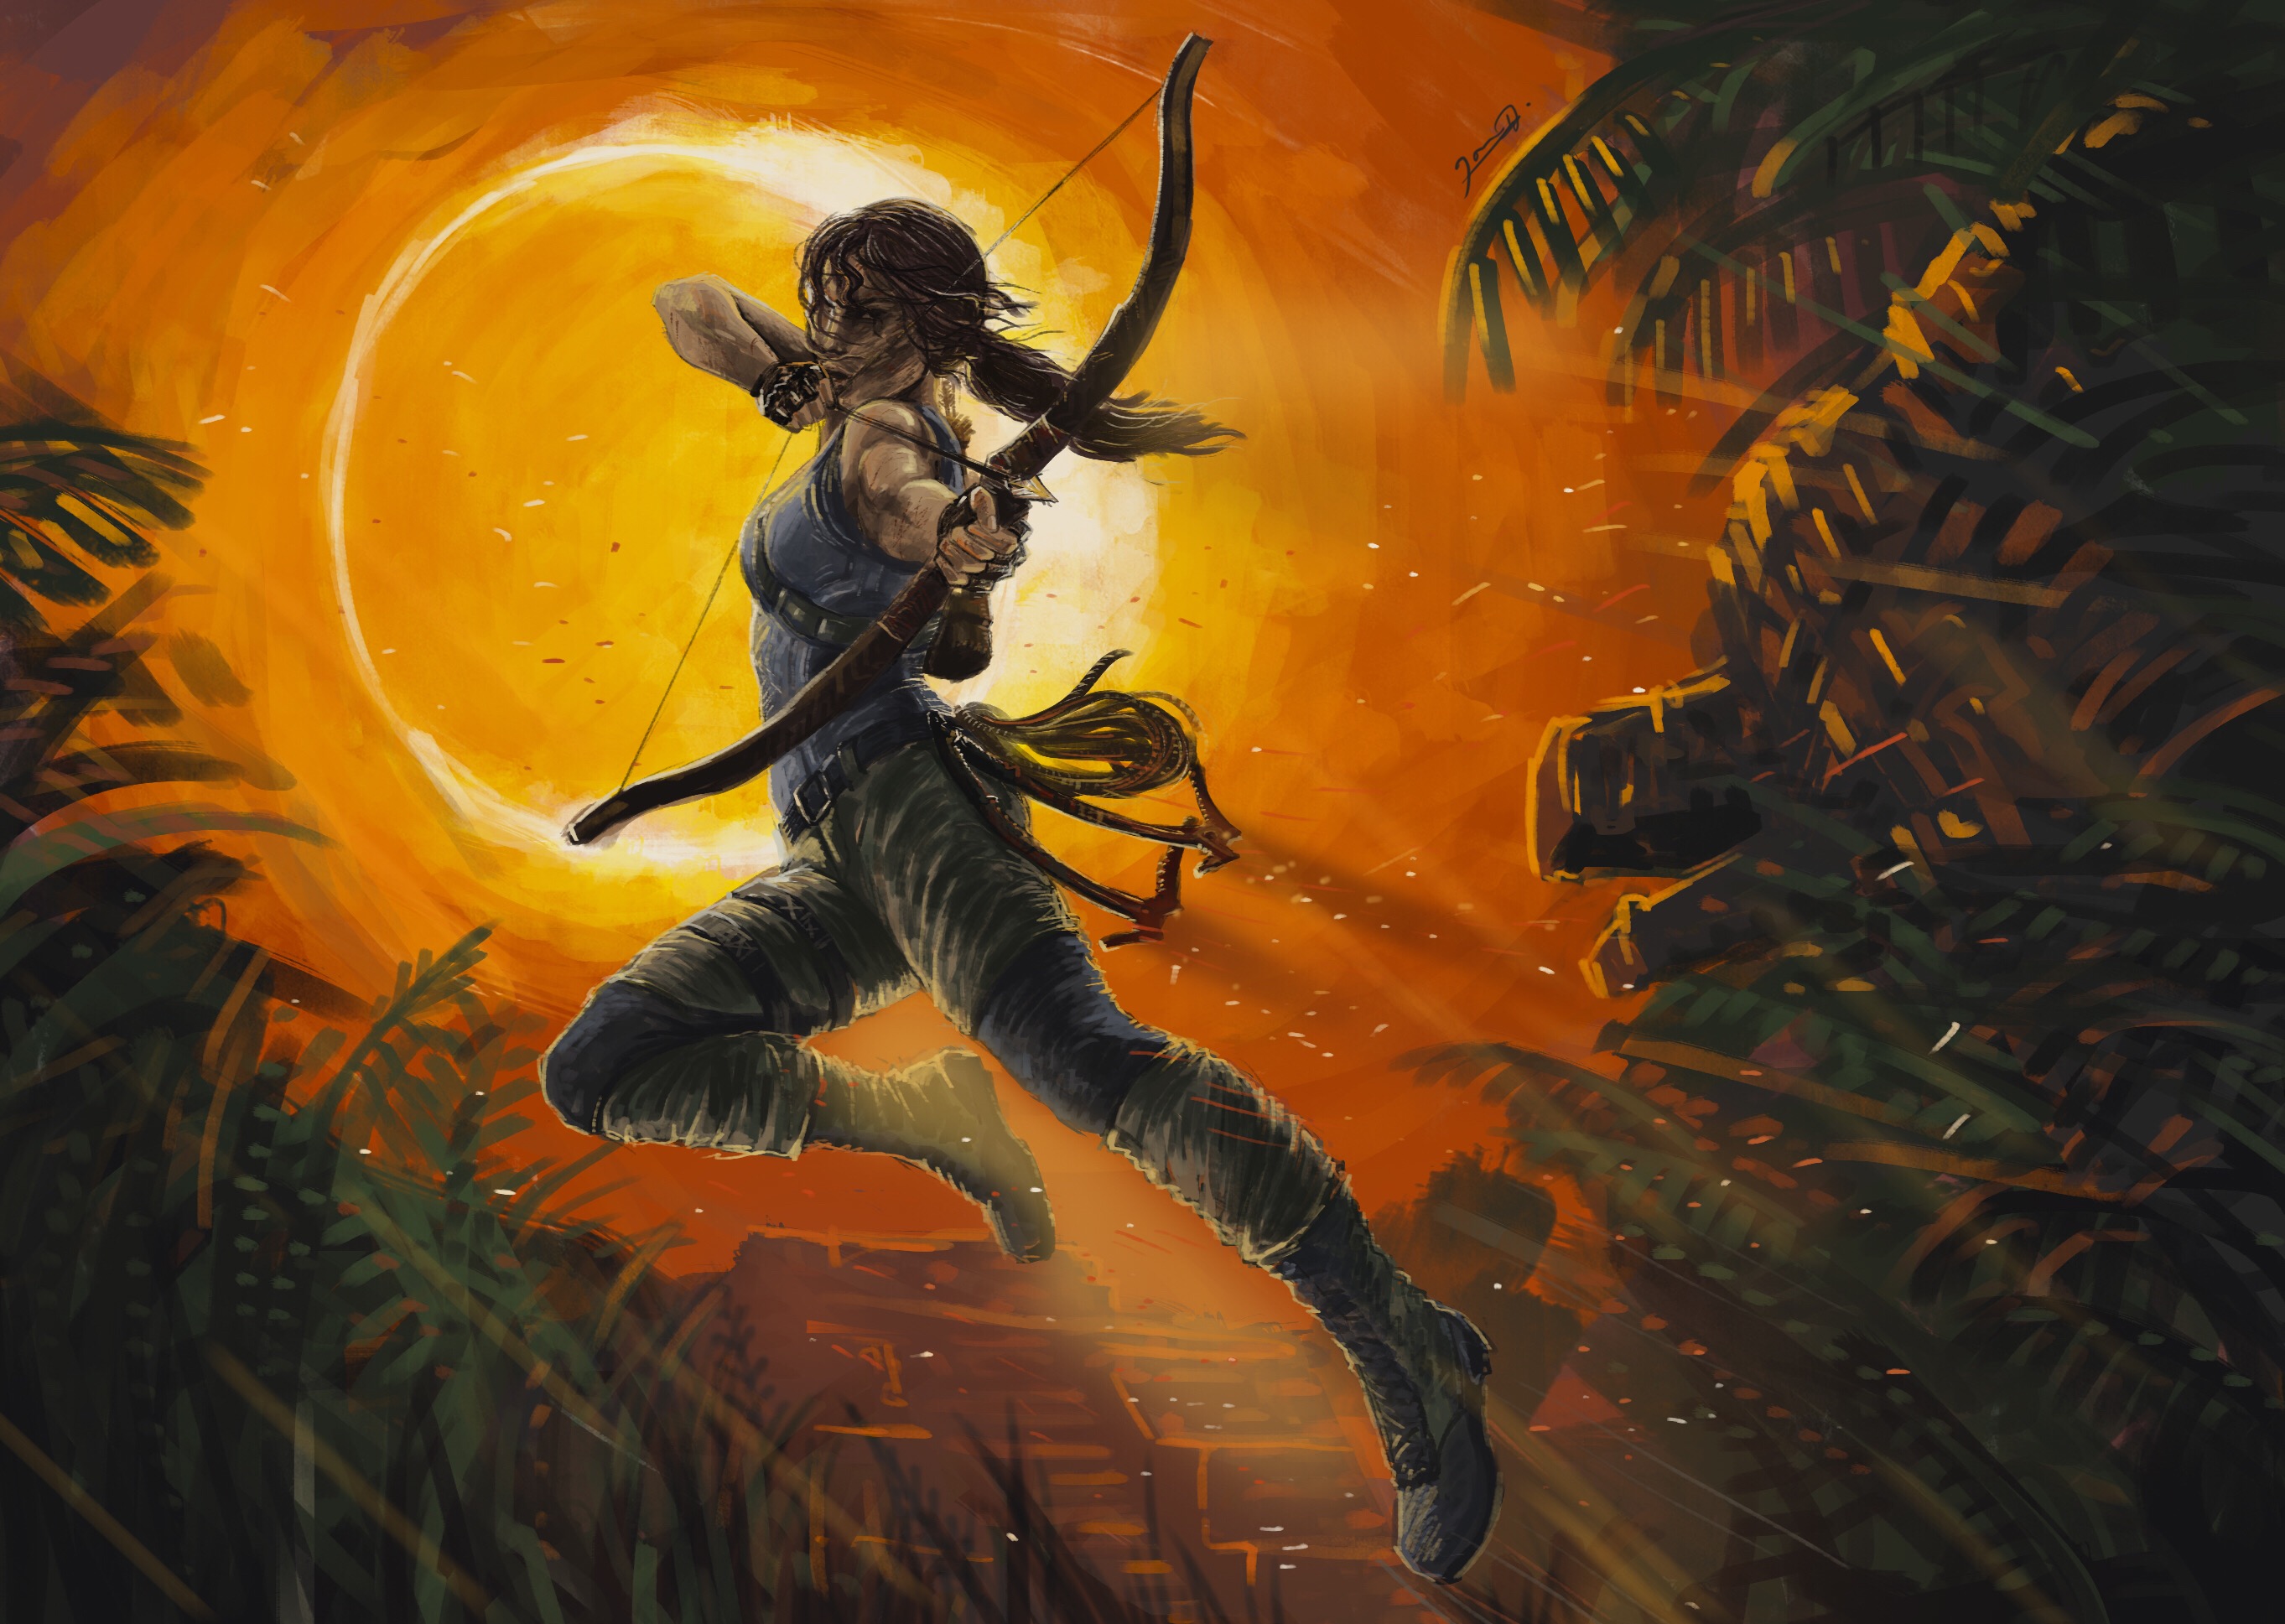 Descarga gratuita de fondo de pantalla para móvil de Tomb Raider, Arco, Videojuego, Mujer Guerrera, Lara Croft.